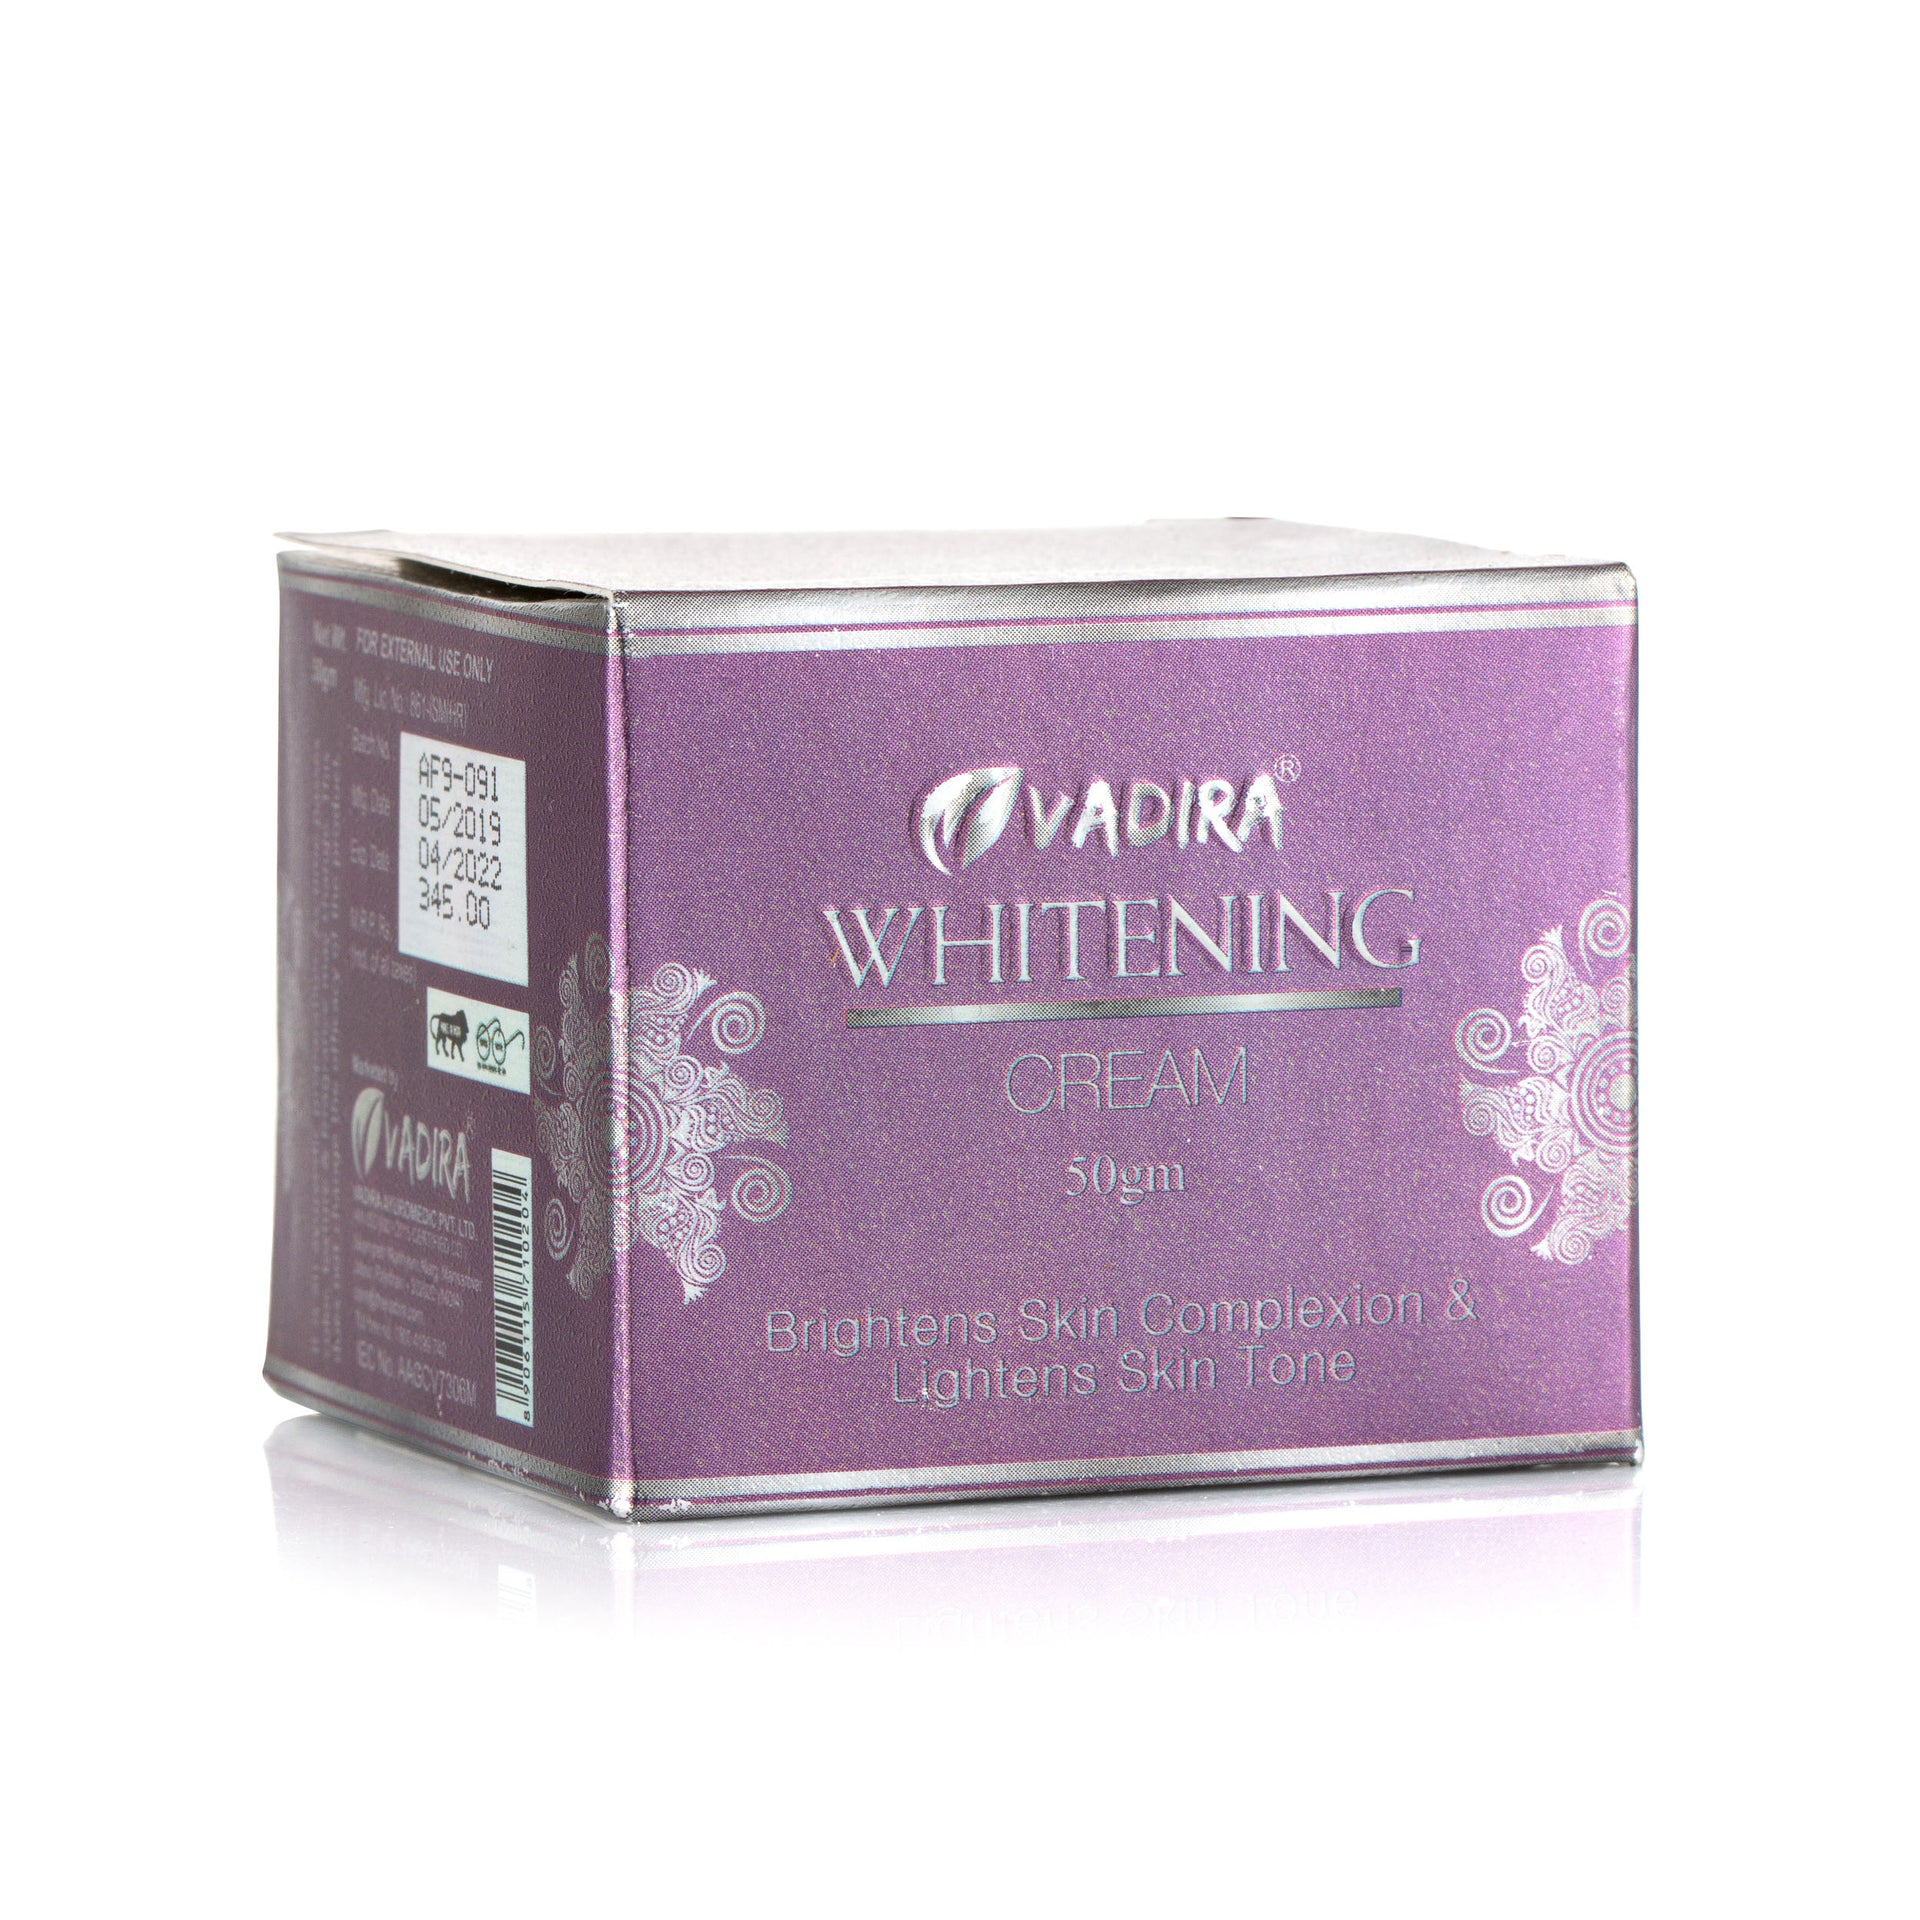 Vadira Whitening Cream